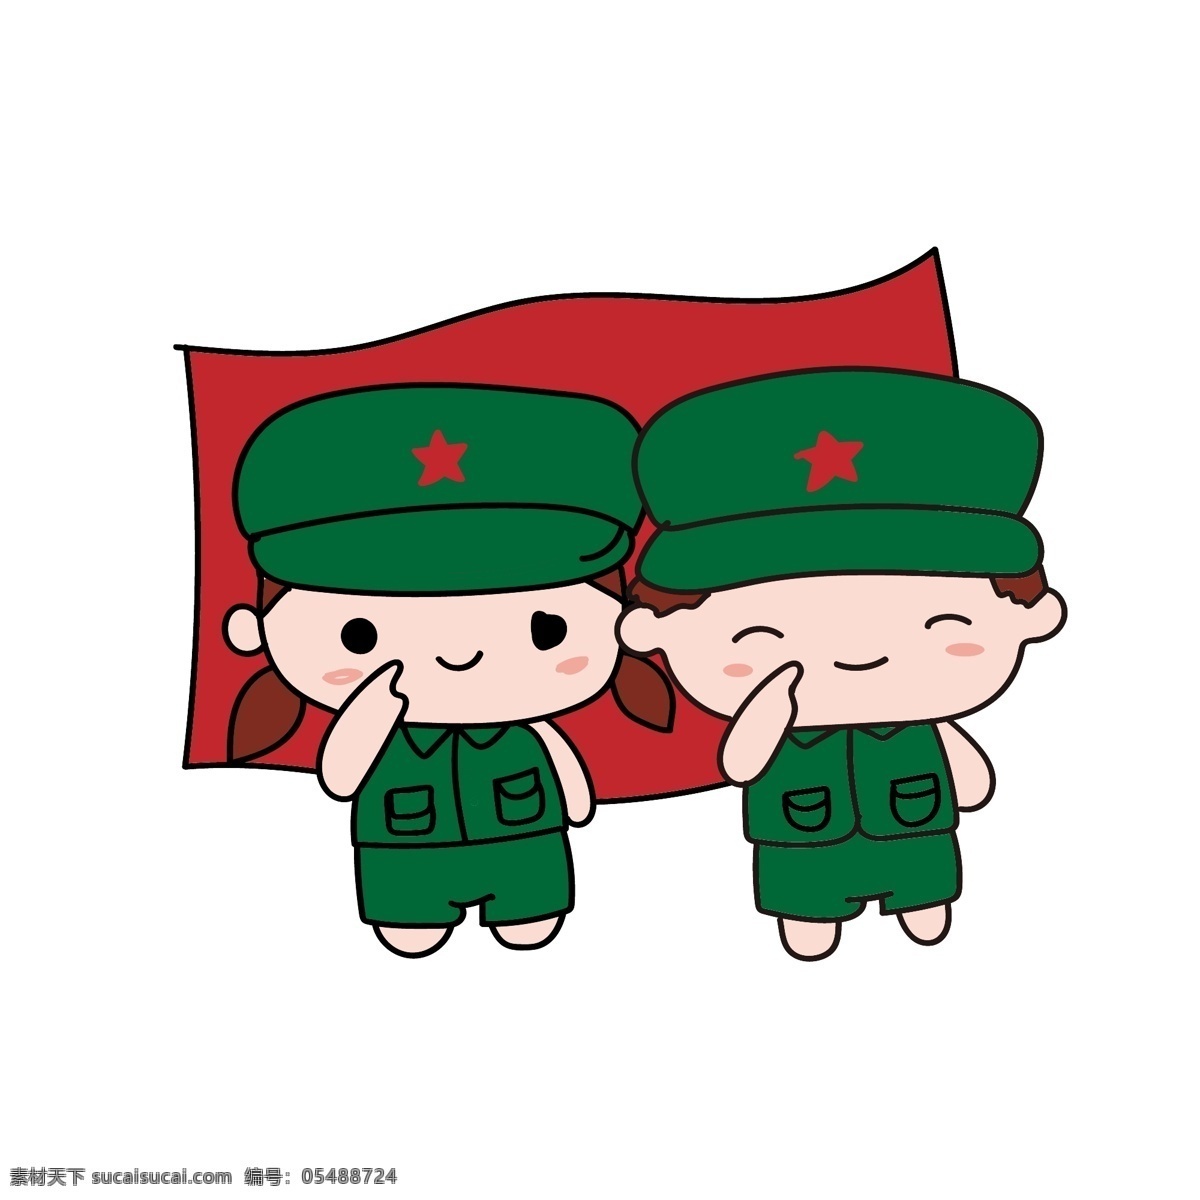 红旗 前 敬礼 小朋友 绿色军装 可爱的小朋友 小孩 插画 红星绿色军帽 改革开放 国庆 国旗